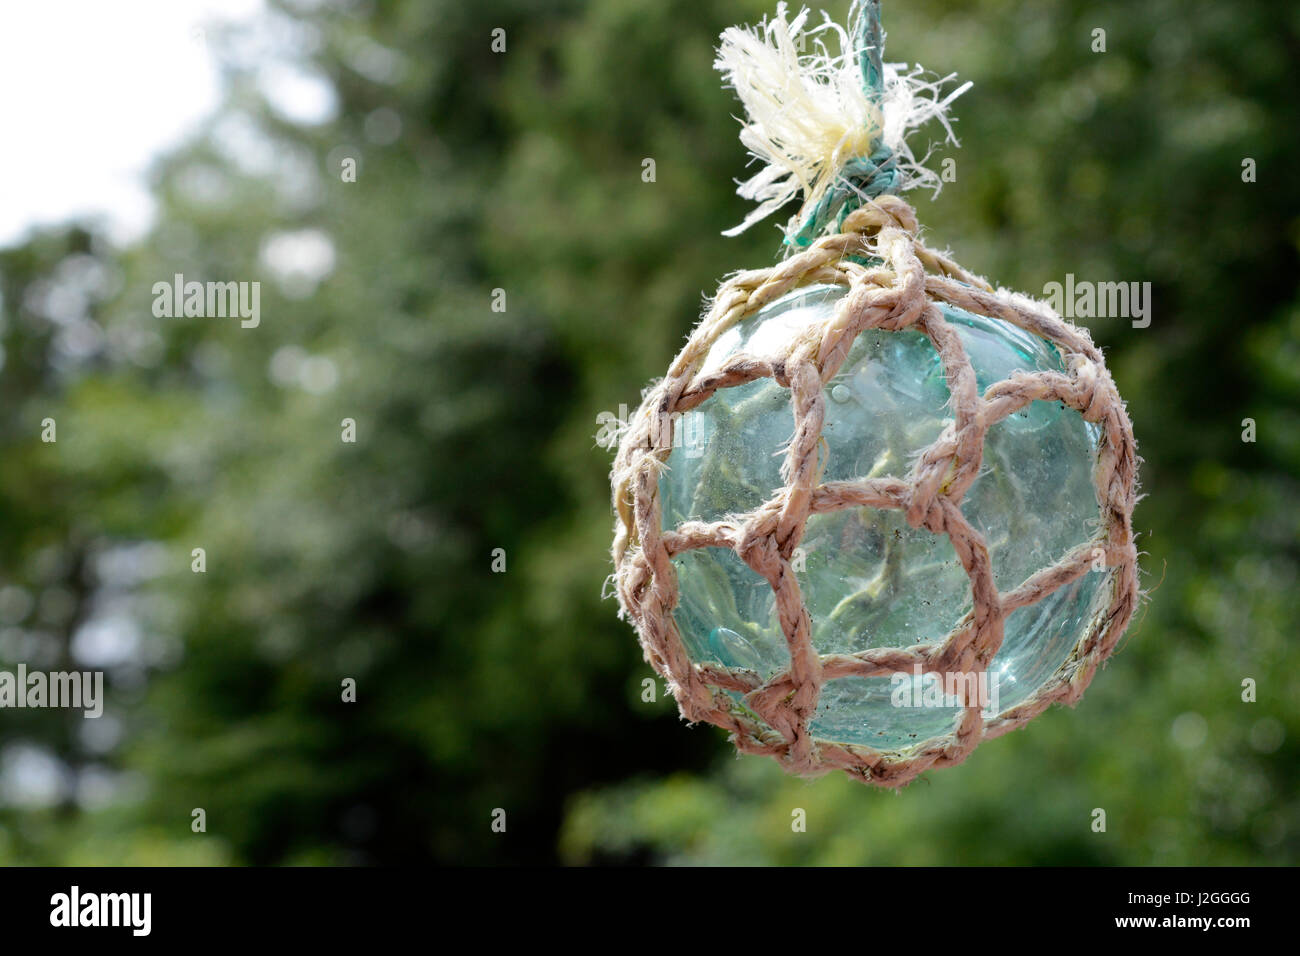 Albero Di Natale Giapponese Pesca.Net Fishing Glass Ball Immagini E Fotos Stock Alamy